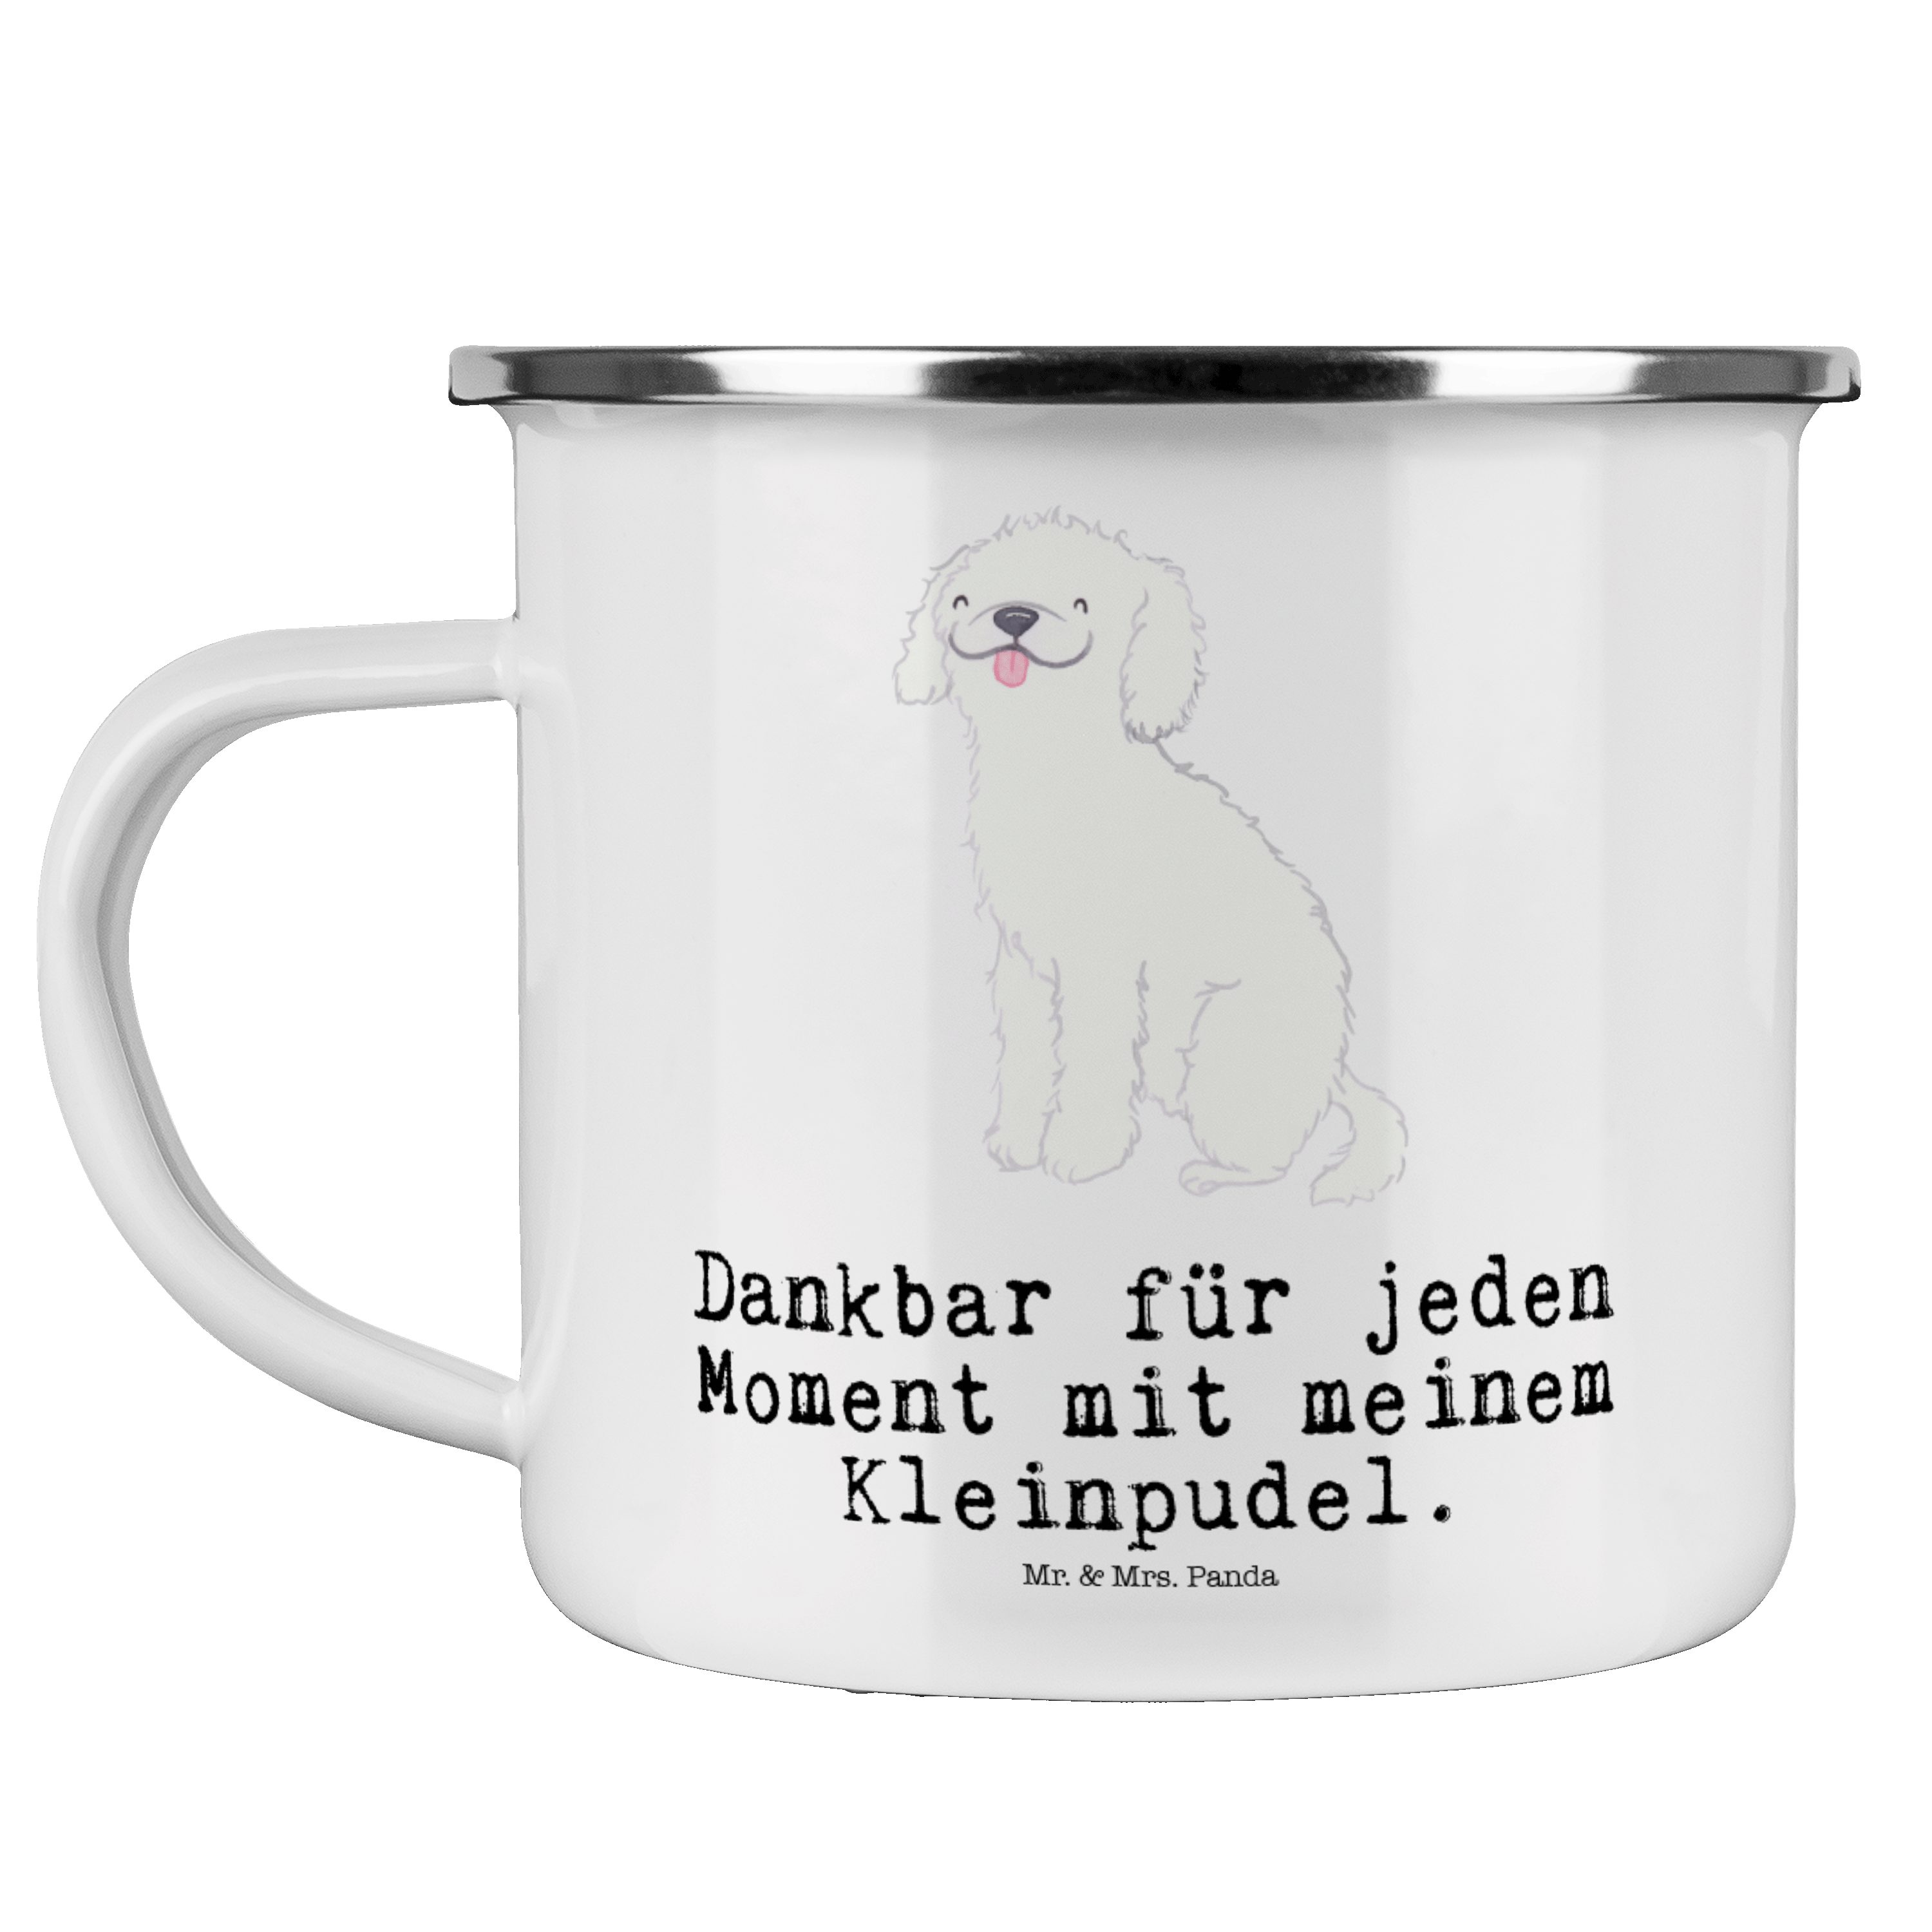 Mr. & Mrs. Panda Becher Kleinpudel Moment - Weiß - Geschenk, Hund, Metalltasse, Kaffee Blecht, Emaille